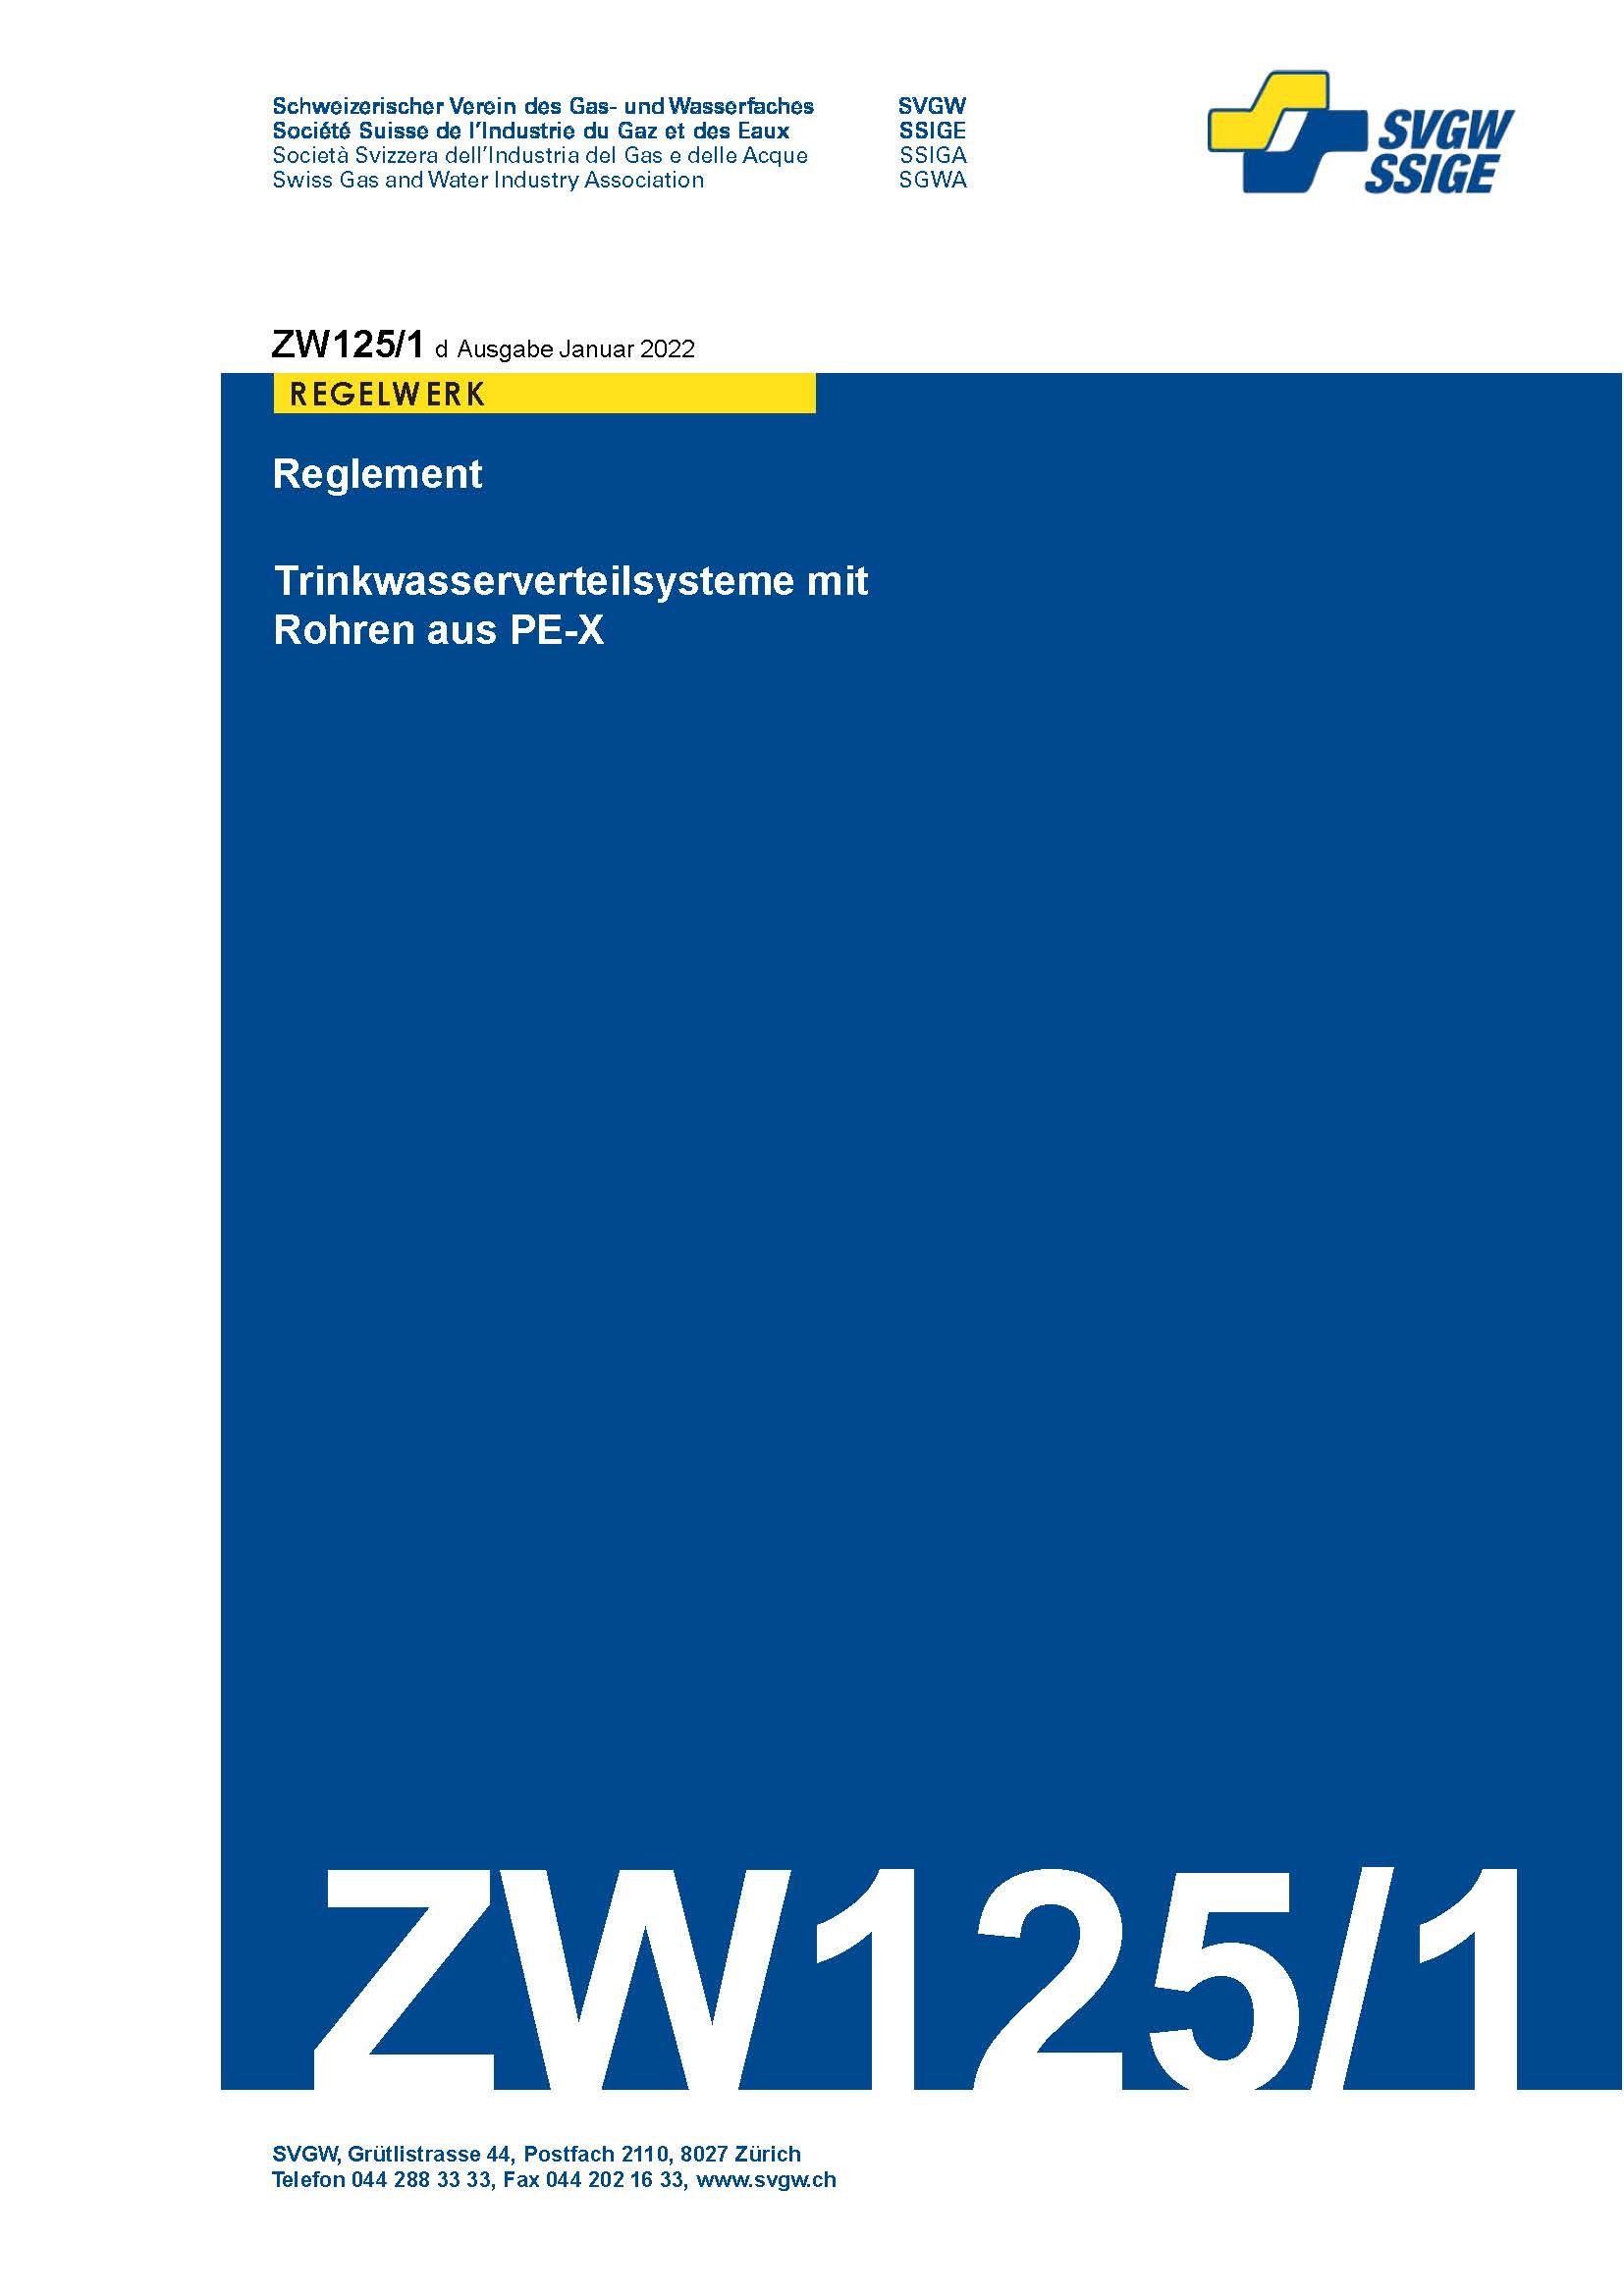 ZW125/1 d - Reglement; Trinkwasserverteilsysteme mit Rohren aus PE-X